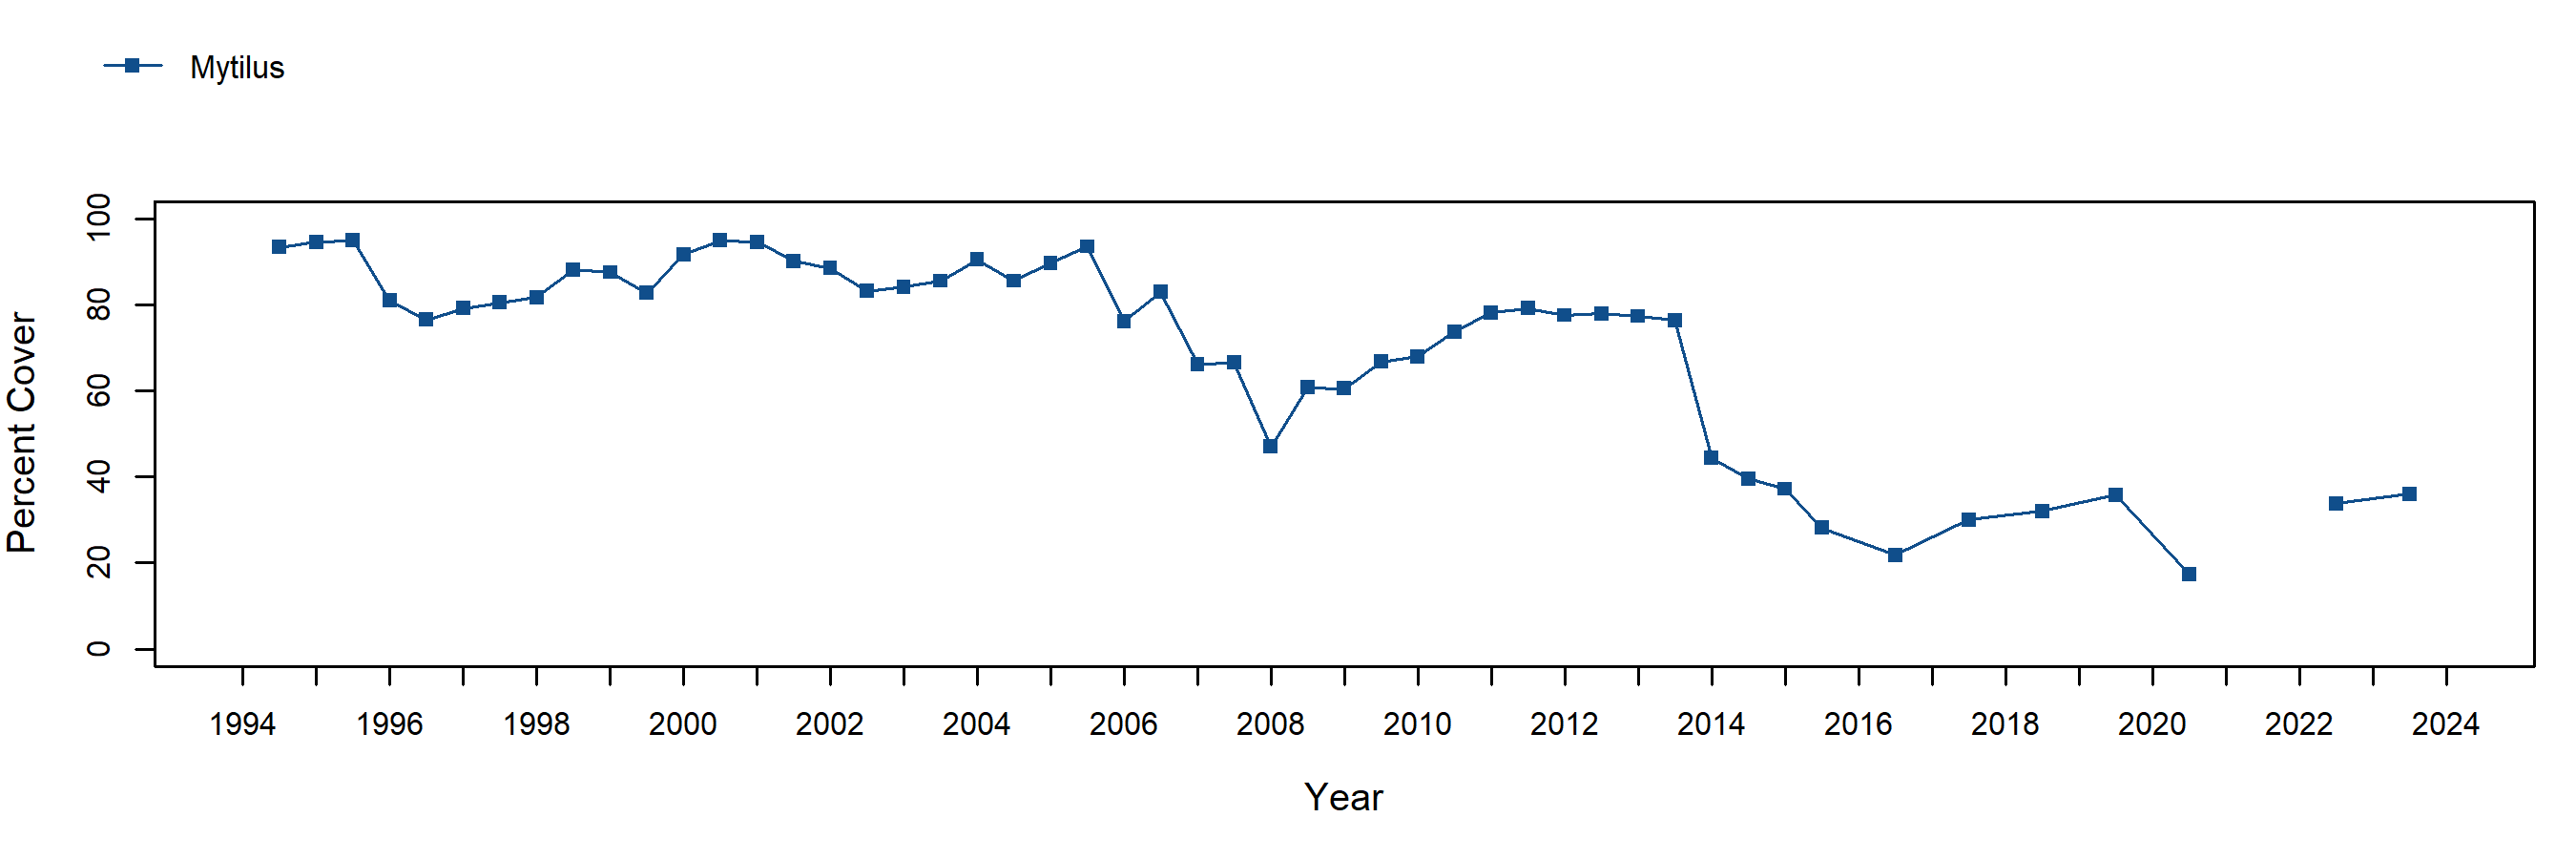 White Point Mytilus trend plot